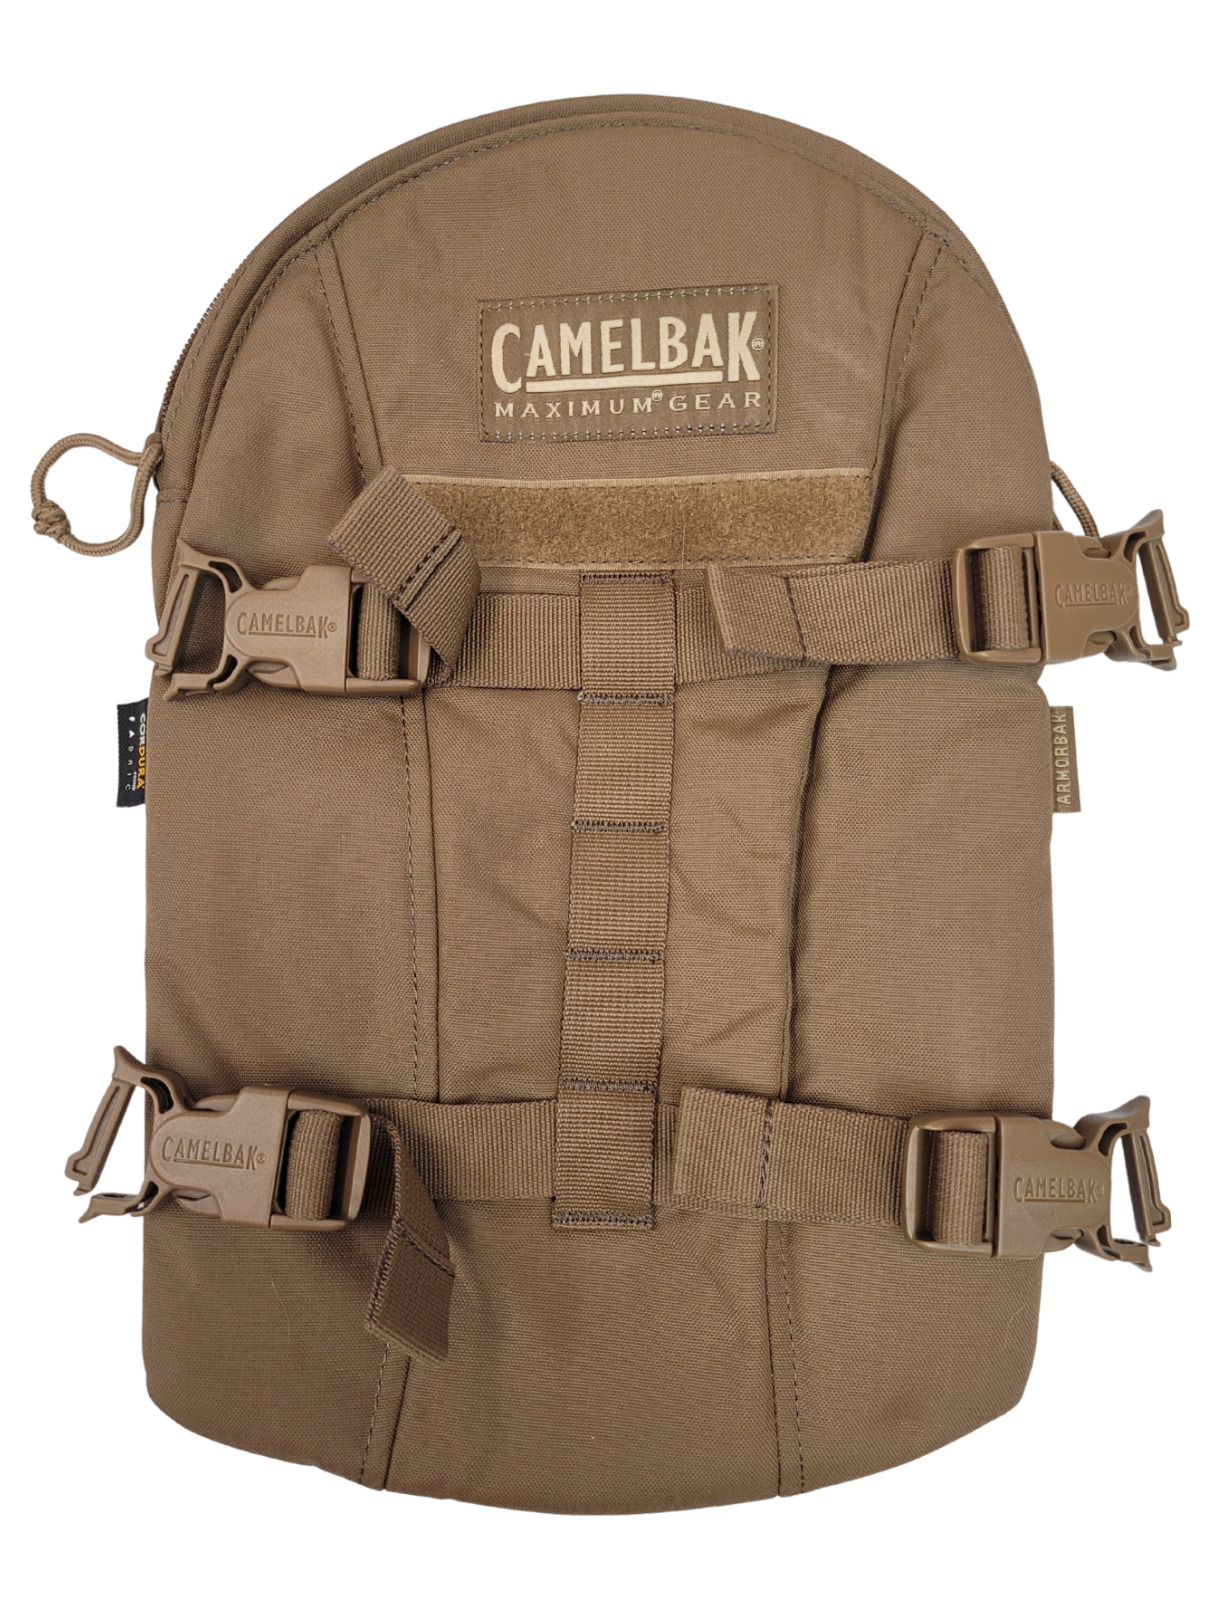 COYOTE Camo Camelbak Armorbak Hydration System Carrier *mocinc.1982*